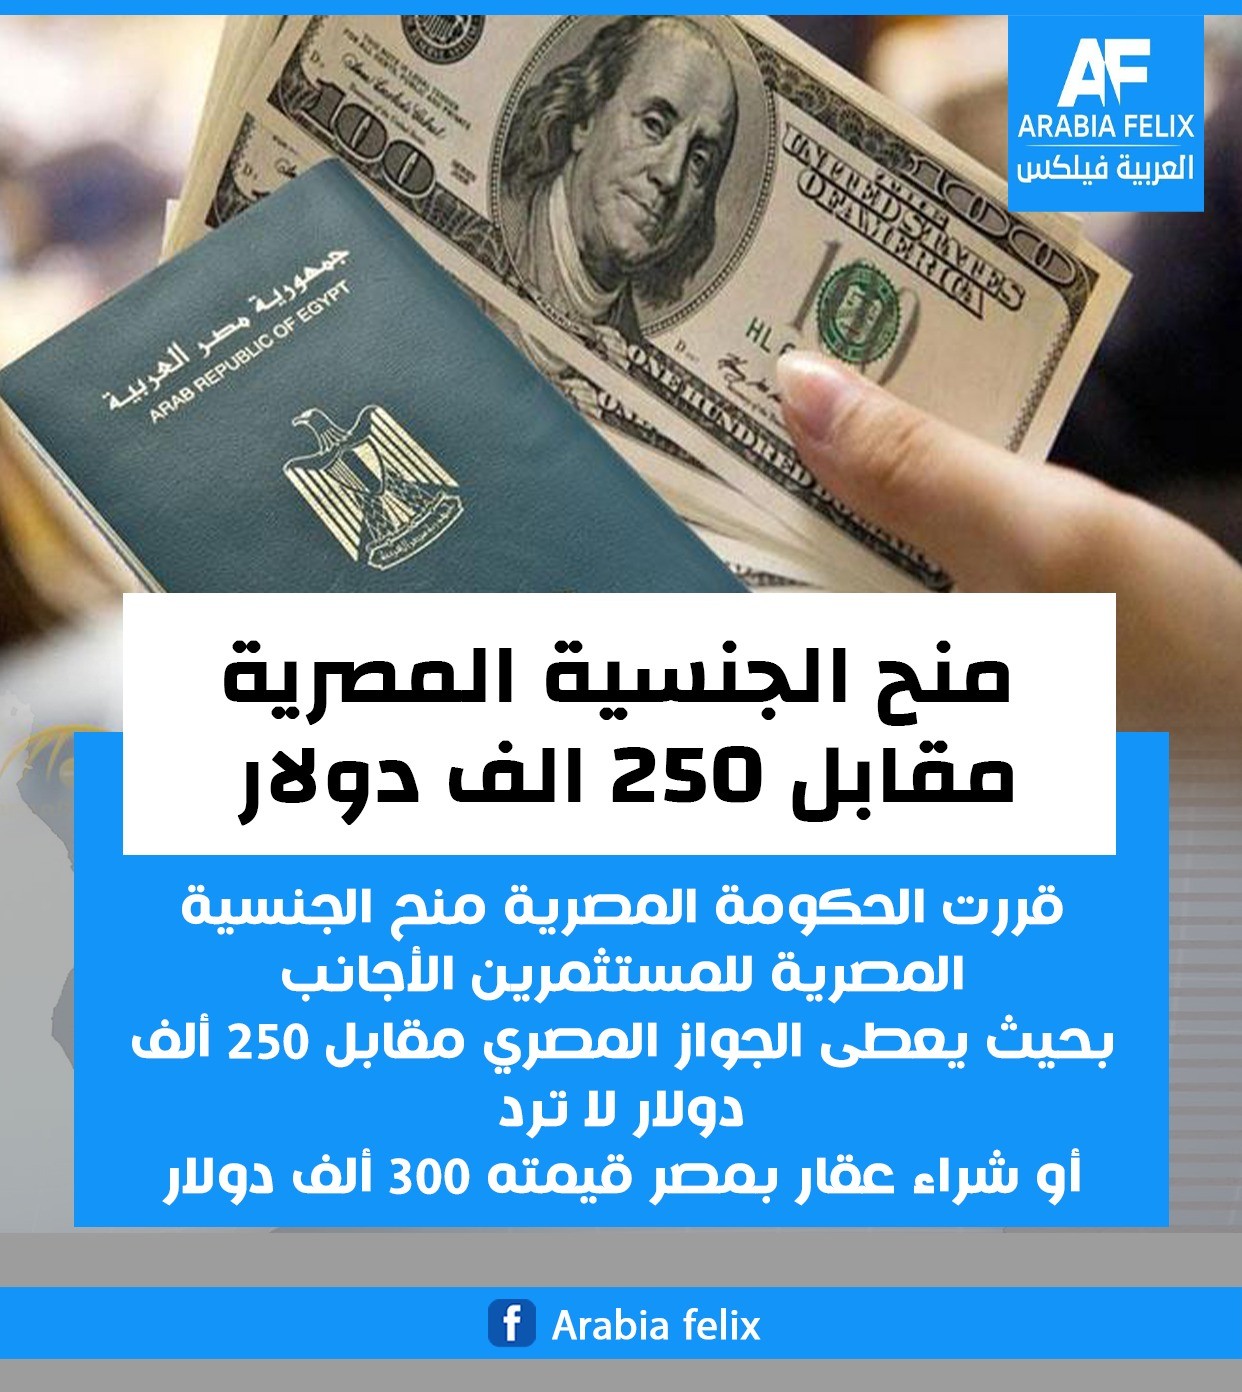 خطوة غير مآلوفة عربياً.. منح الجنسية المصرية مقابل 250 الف $